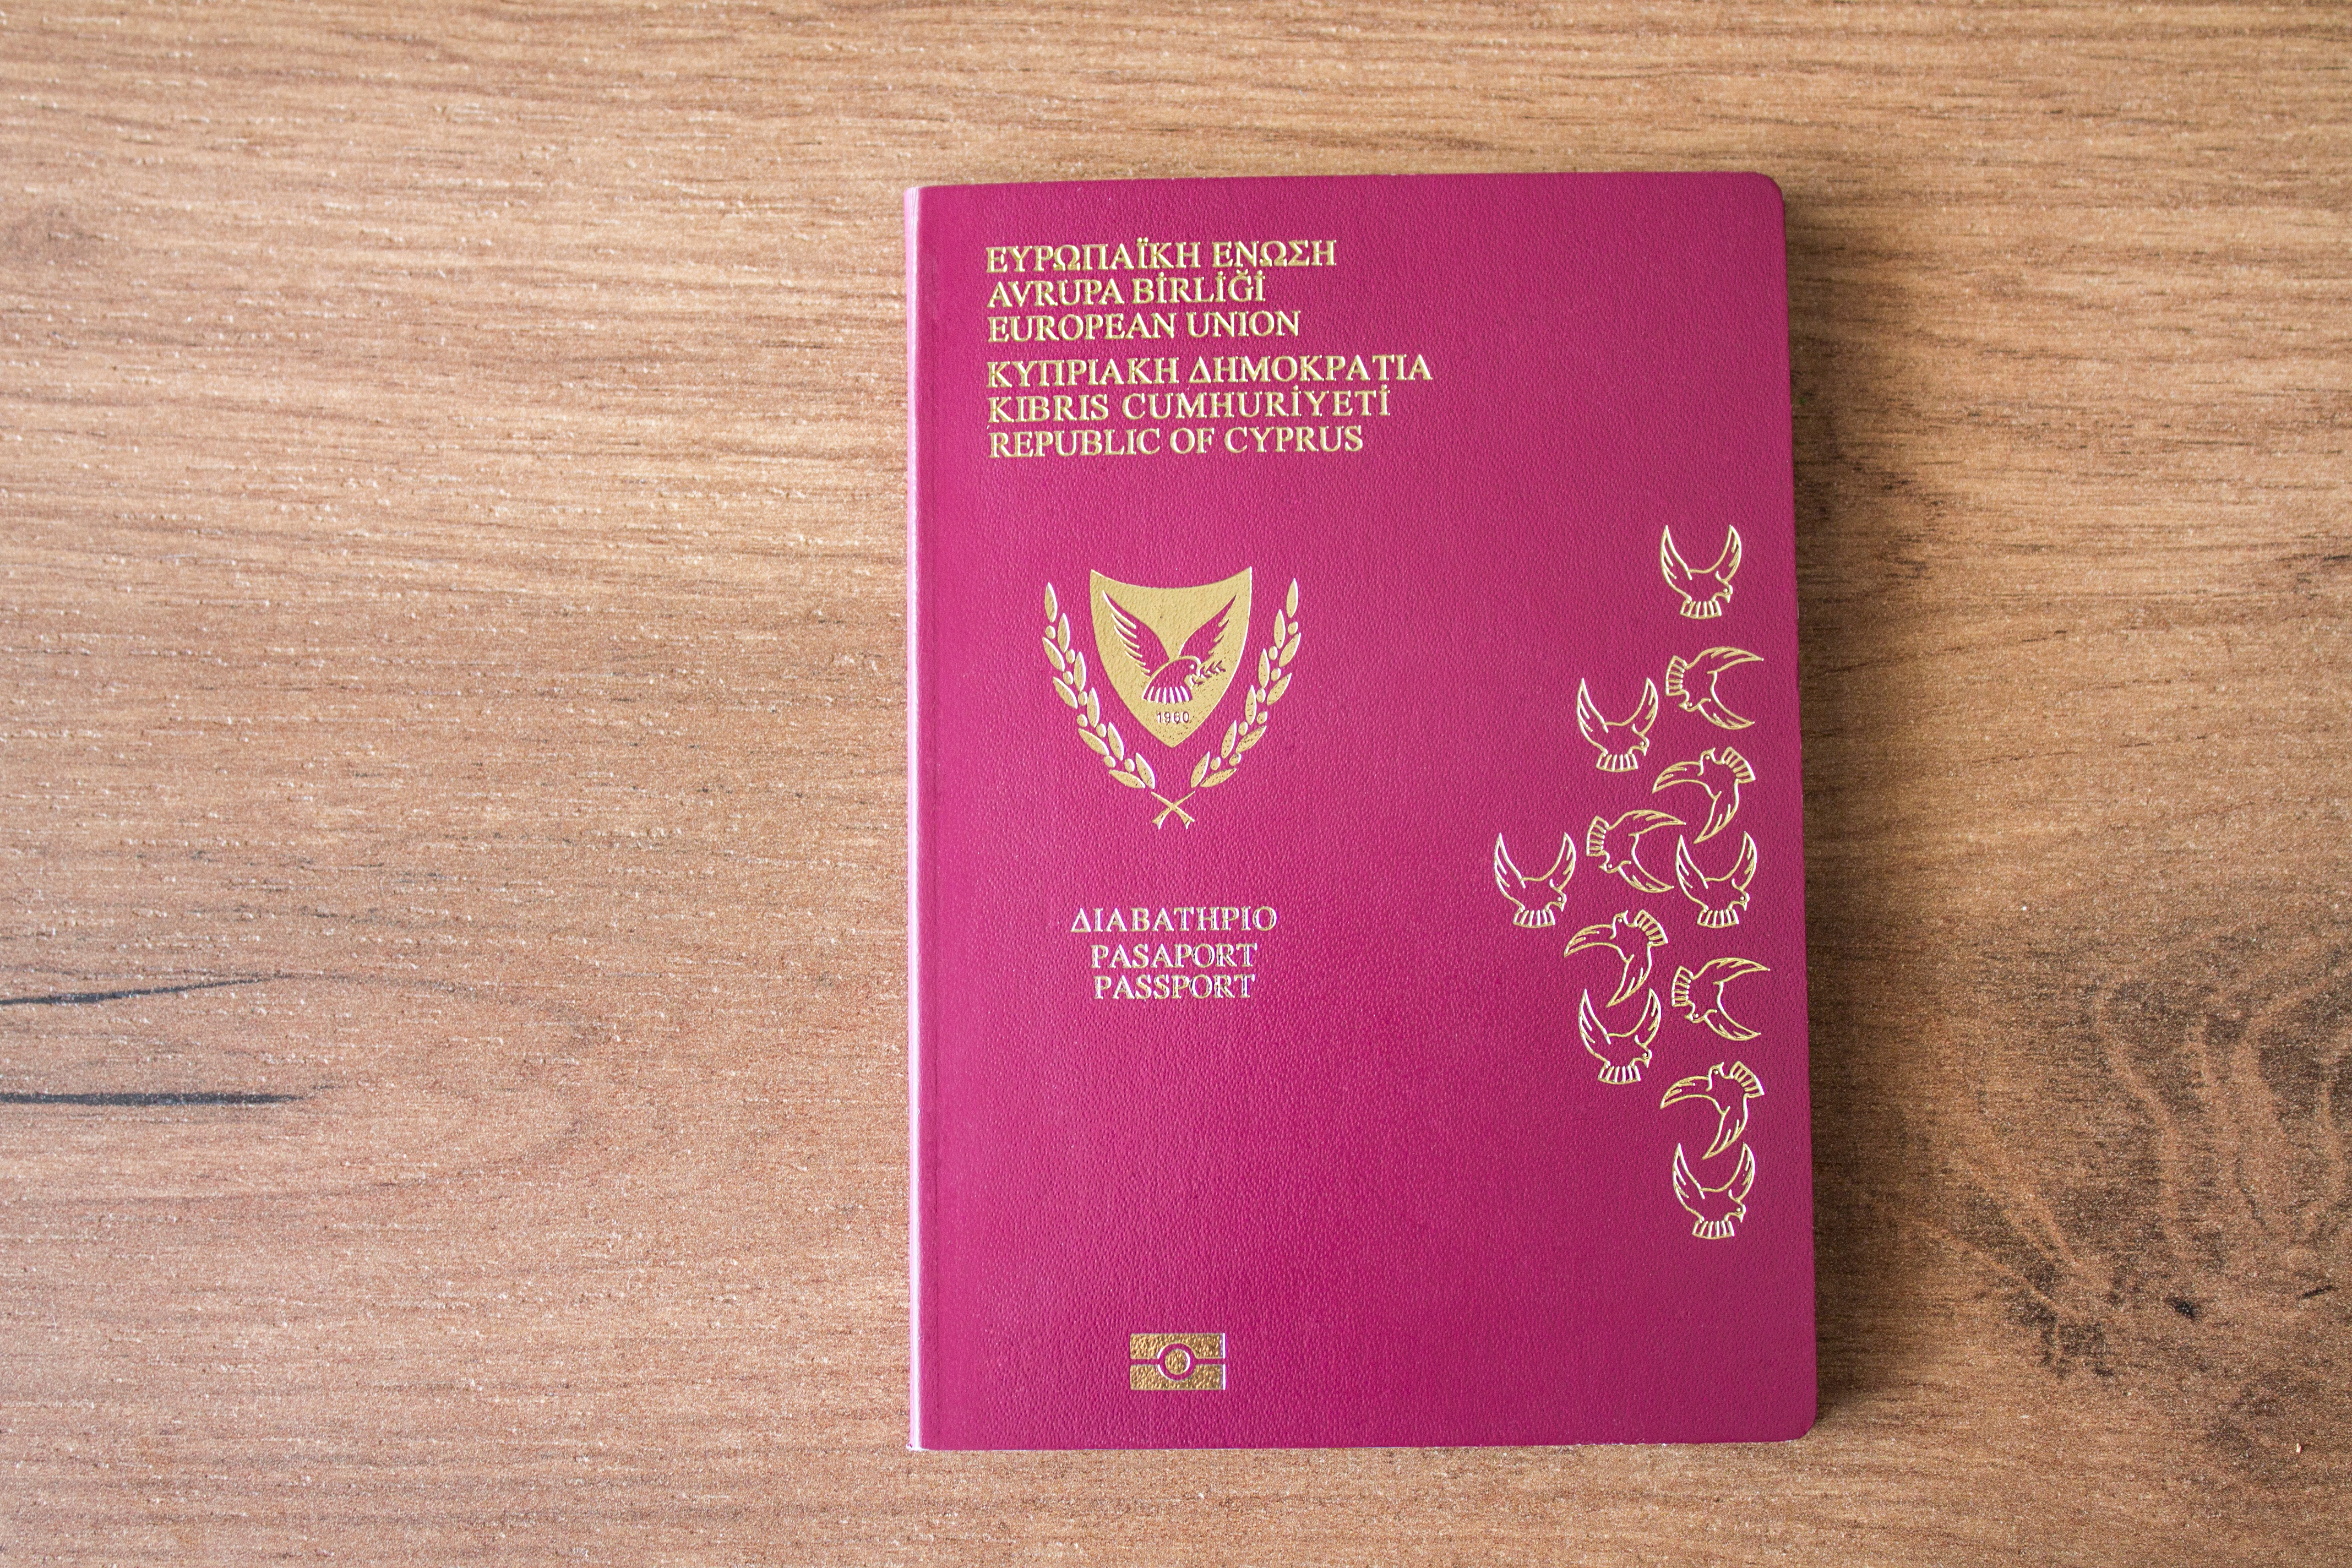 Как можно получить гражданство Кипра?